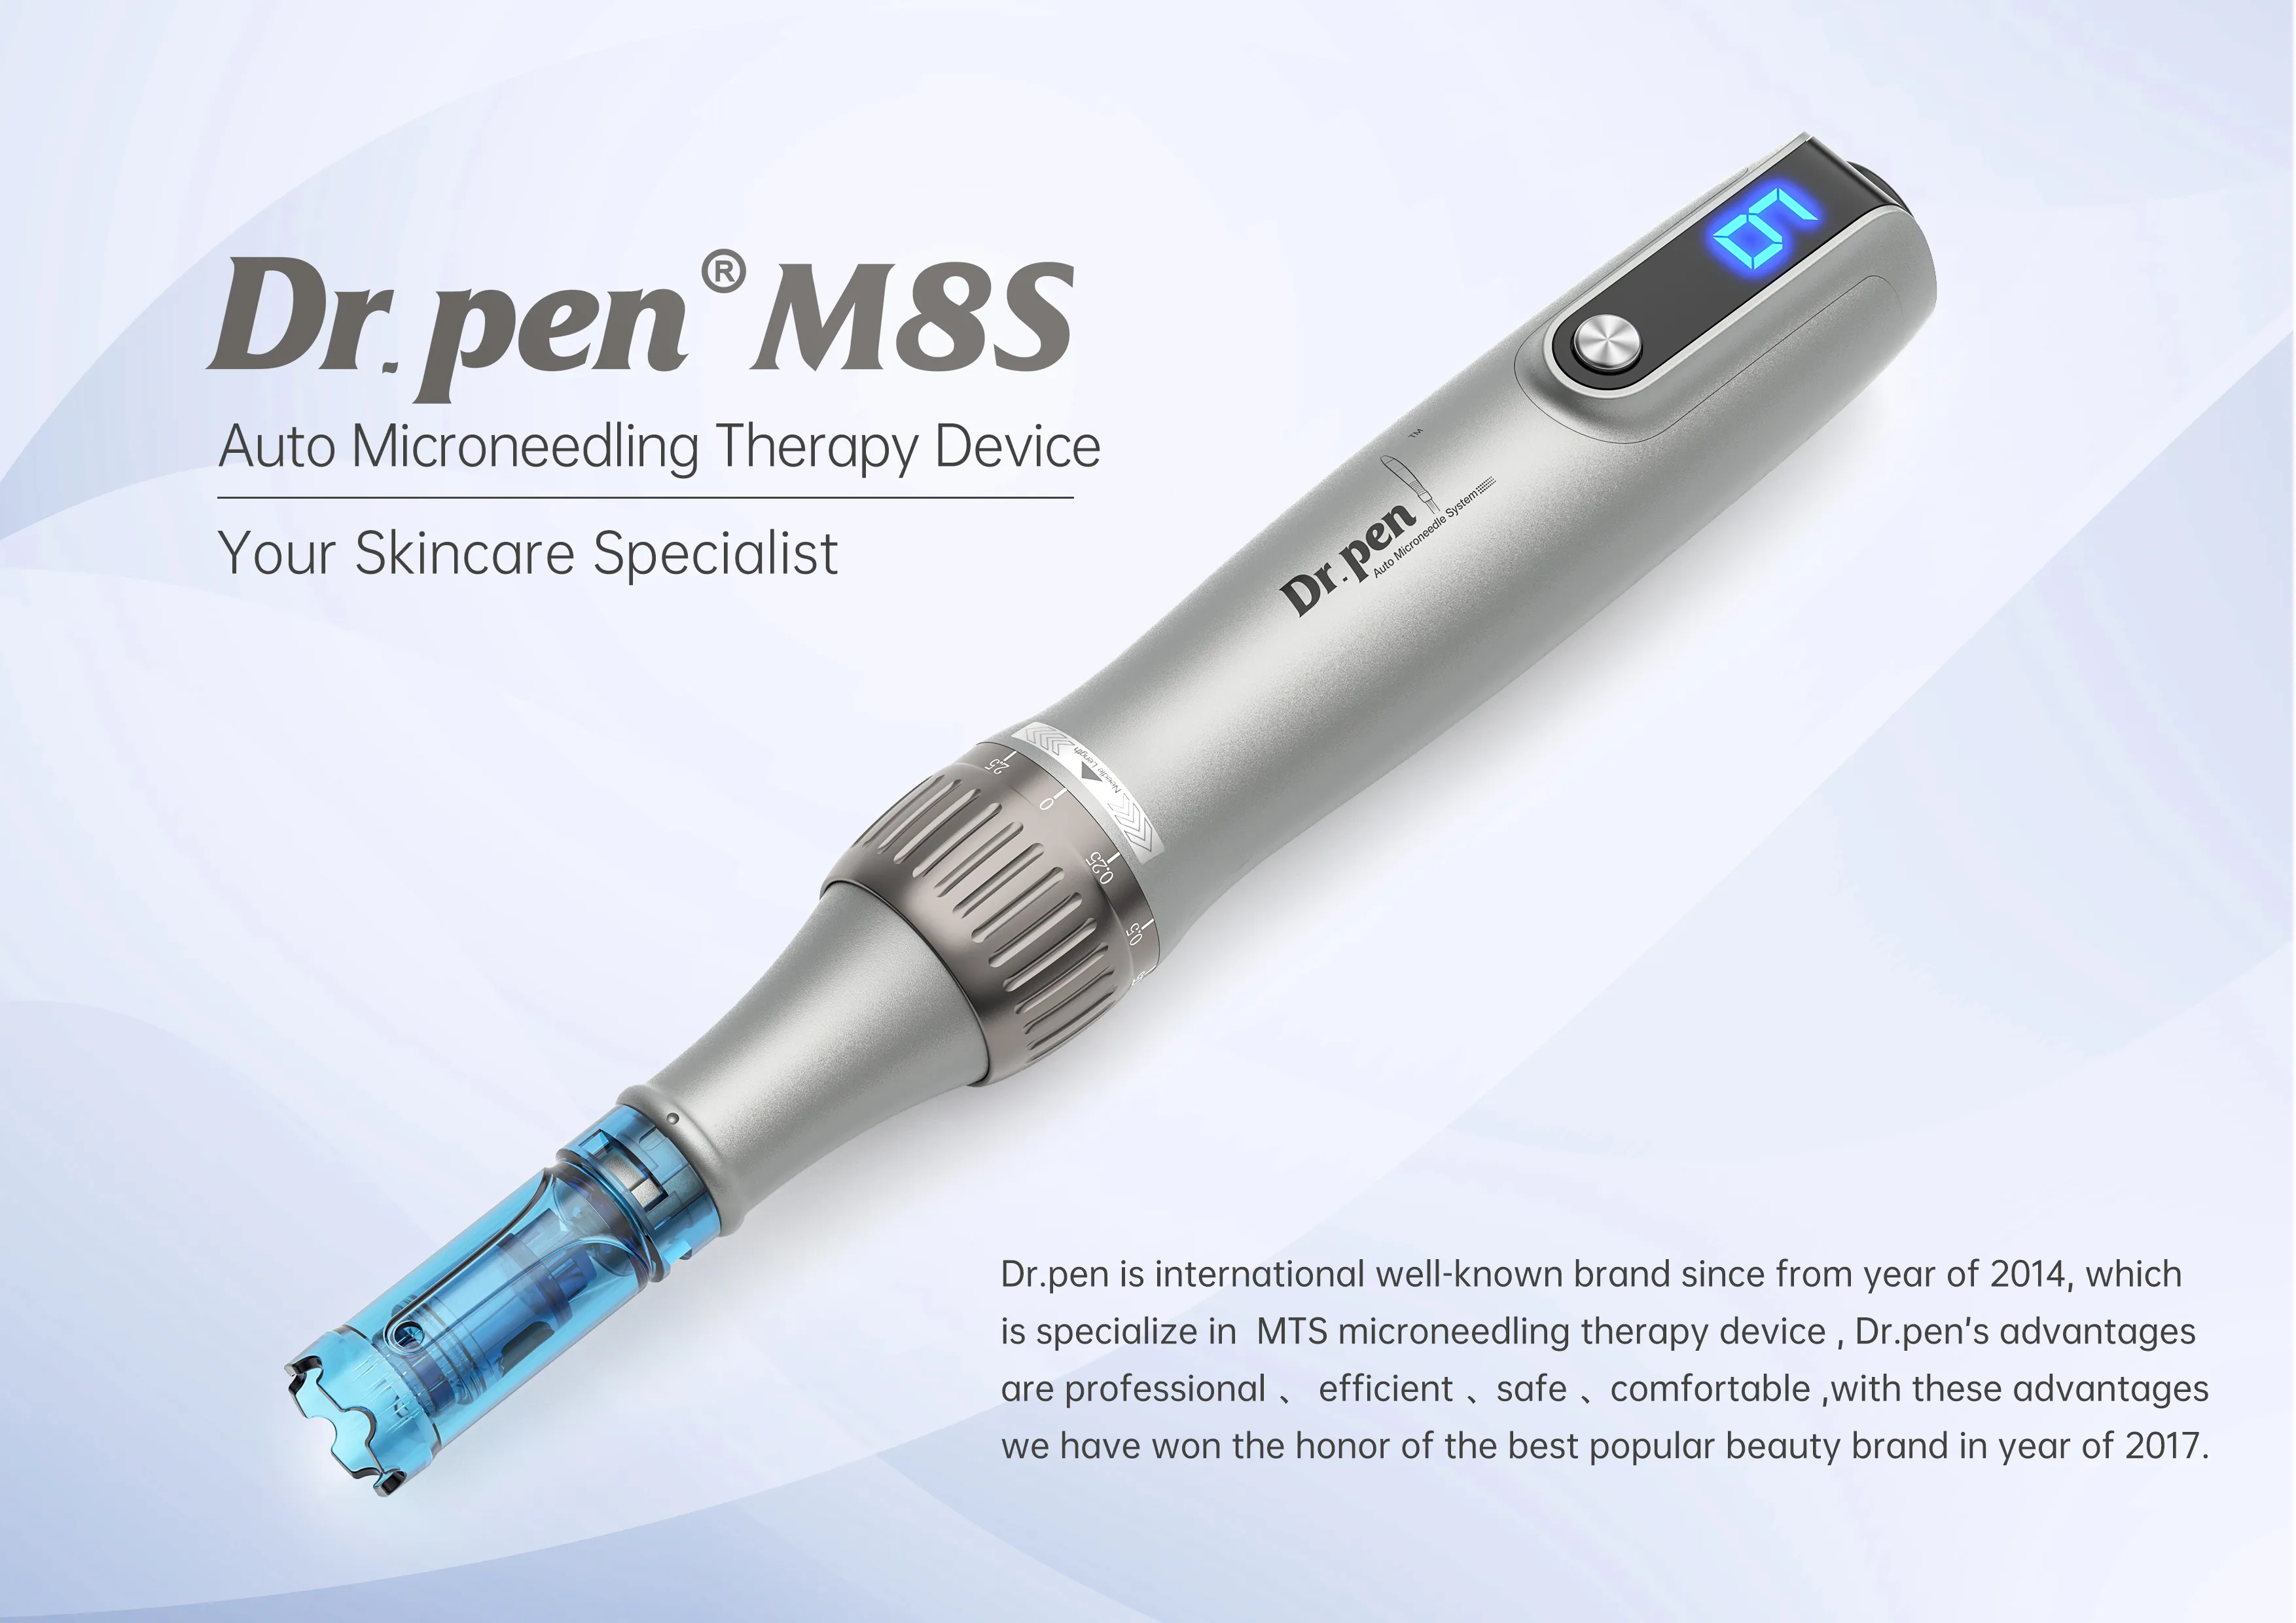 Le stylo à micro-aiguilles sans fil M8s Dr pen améliore en toute sécurité les rides de la peau, l'anti-âge, la prolifération du collagène et soulage la peau sèche